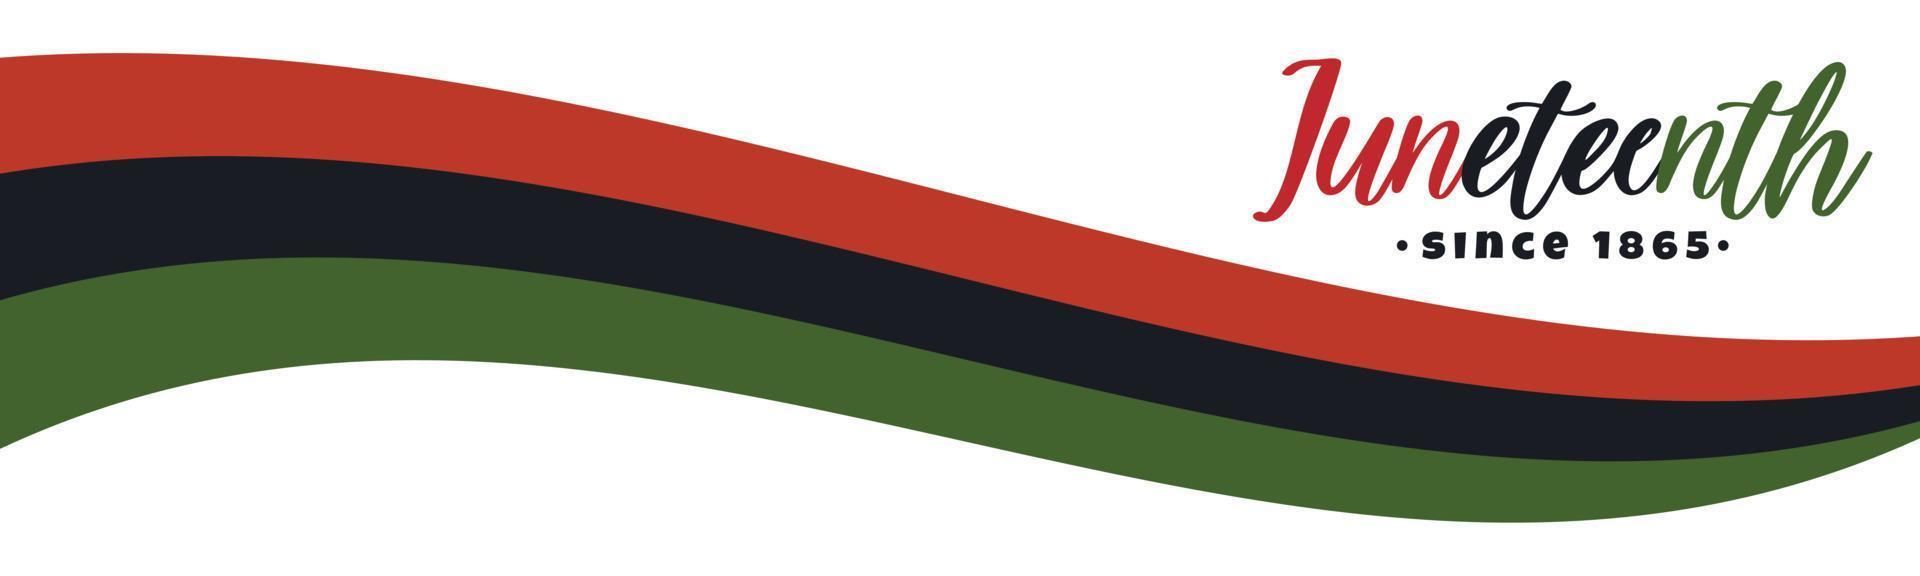 diecinueve, desde 1865 logotipo de letras de texto. diseño de banner horizontal con bandera panafricana de liberación negra con rayas rojas, negras y verdes... ilustración vectorial aislada en fondo blanco, vector